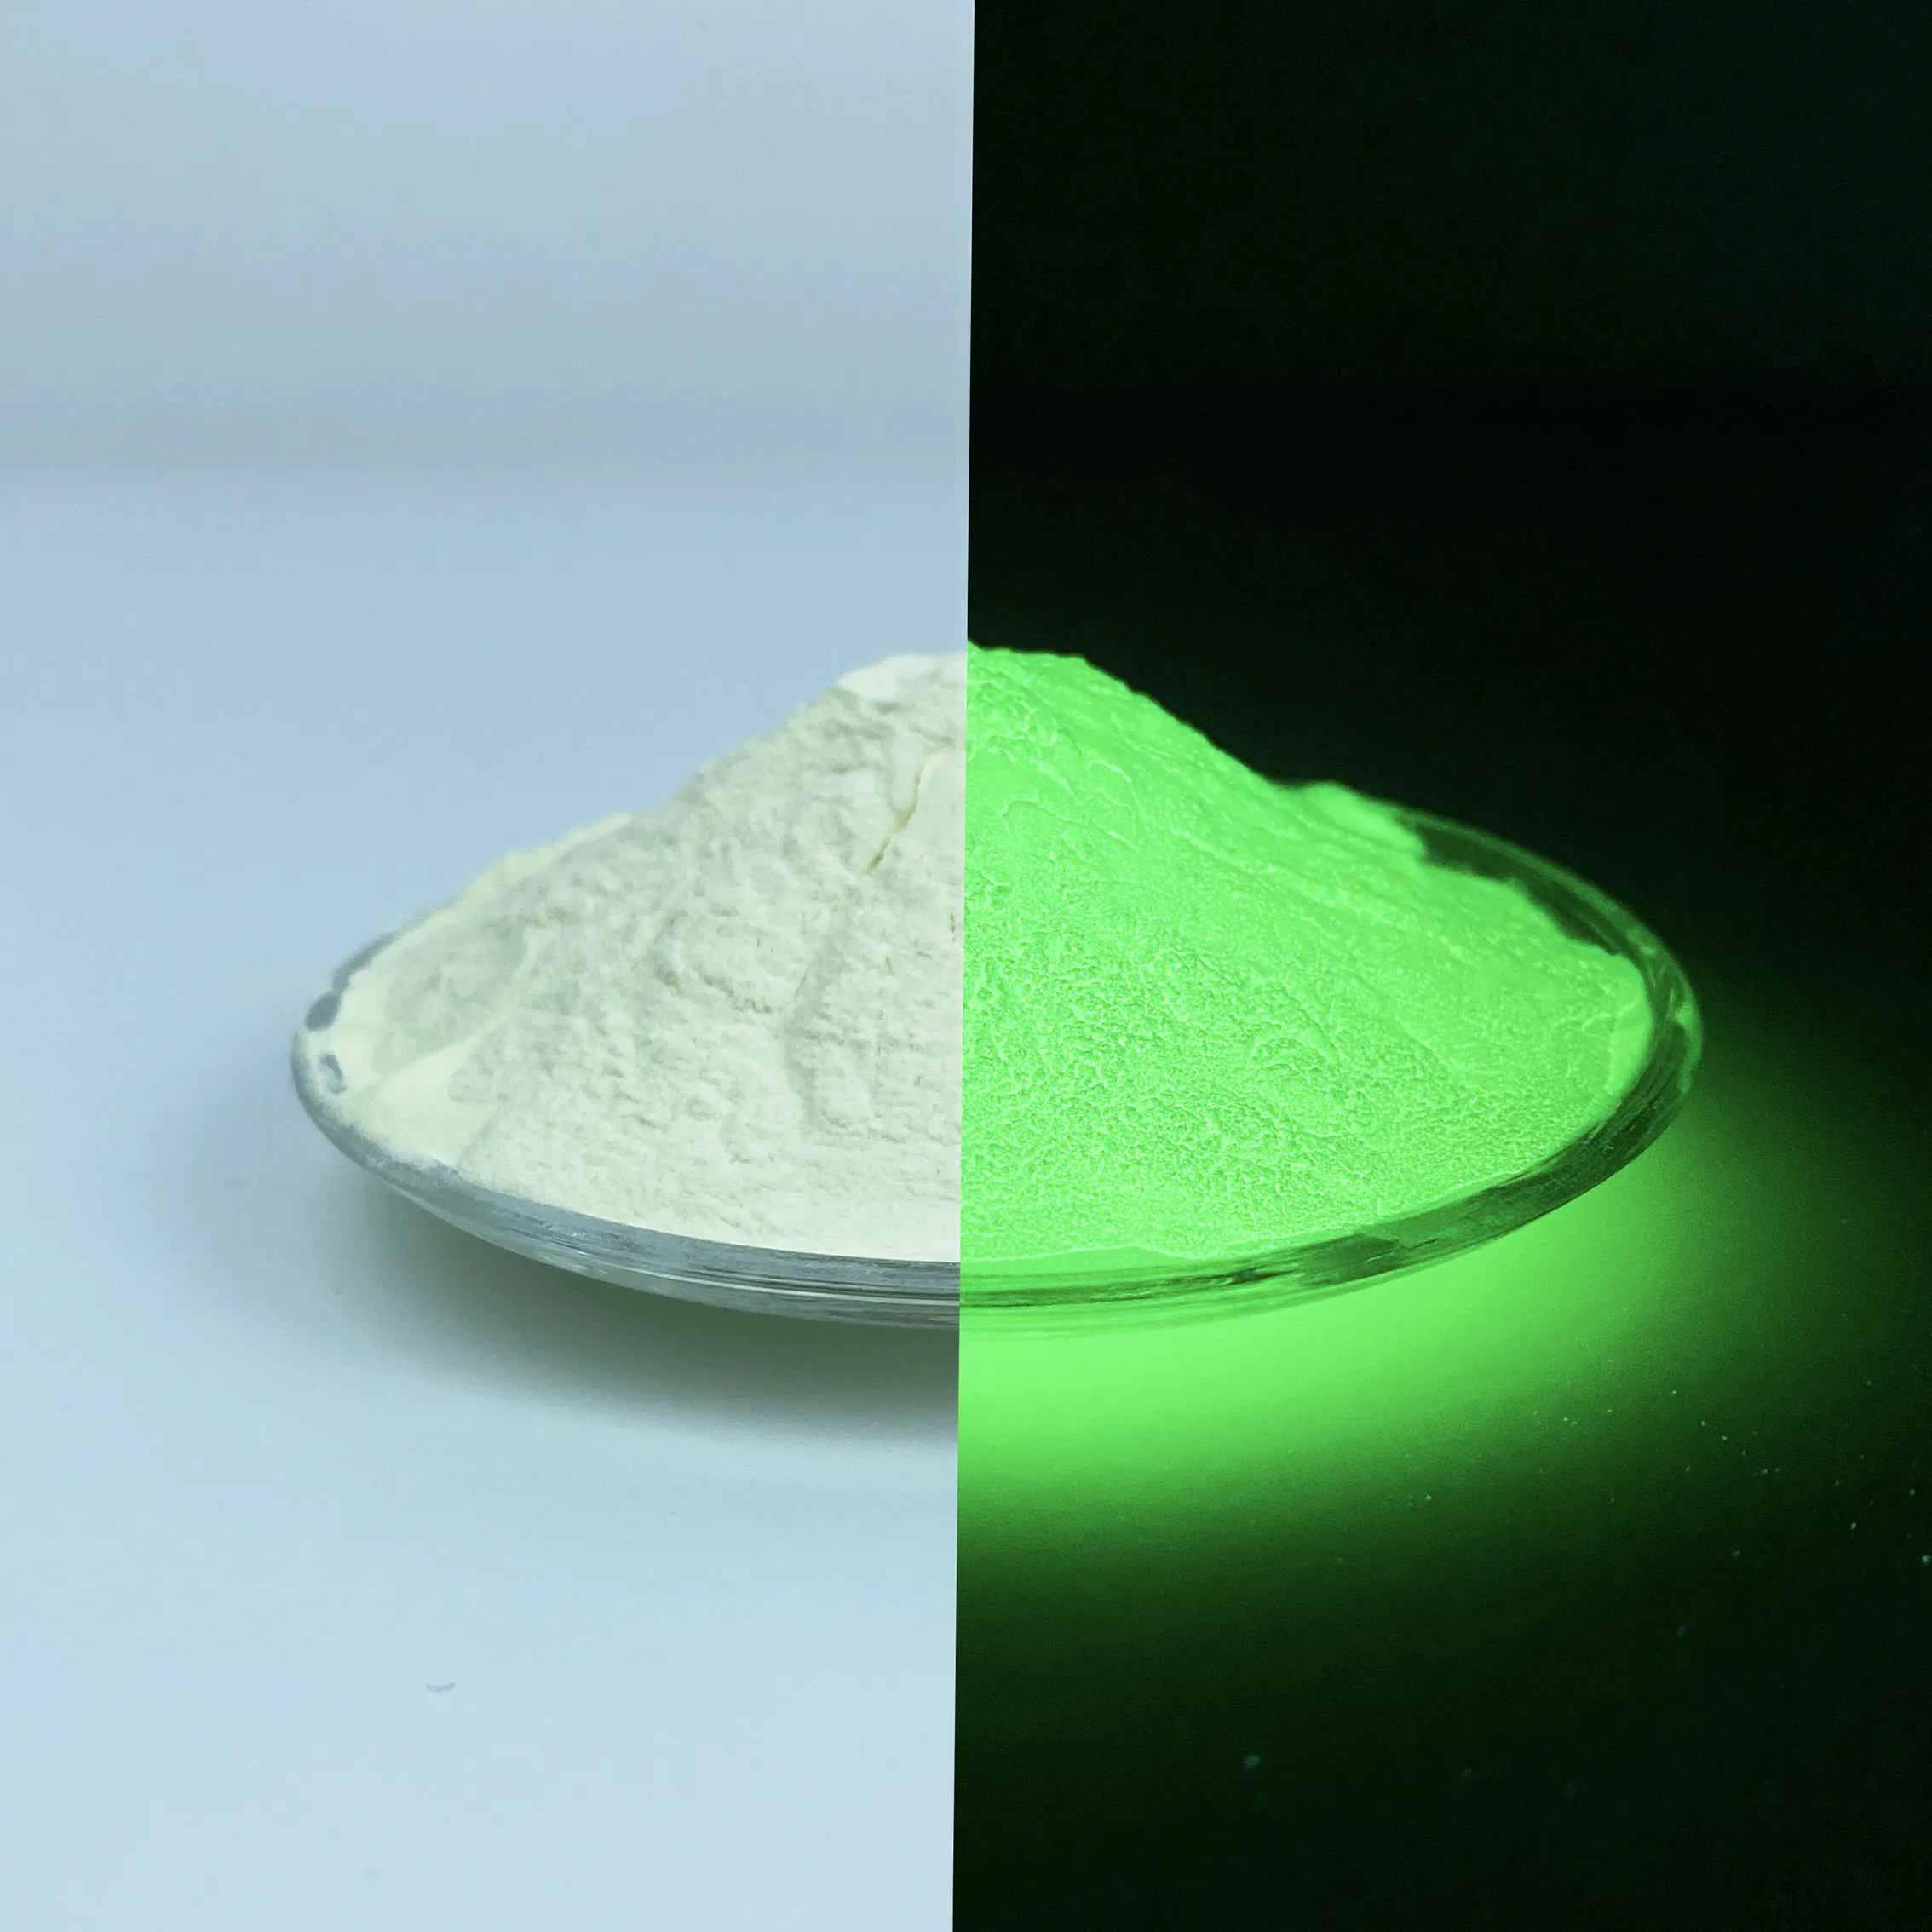 Poudre d'aluminate de strontium poudre photoluminescente étanche lueur dans l'obscurité fournisseurs de pigments en poudre pour carreaux de verre